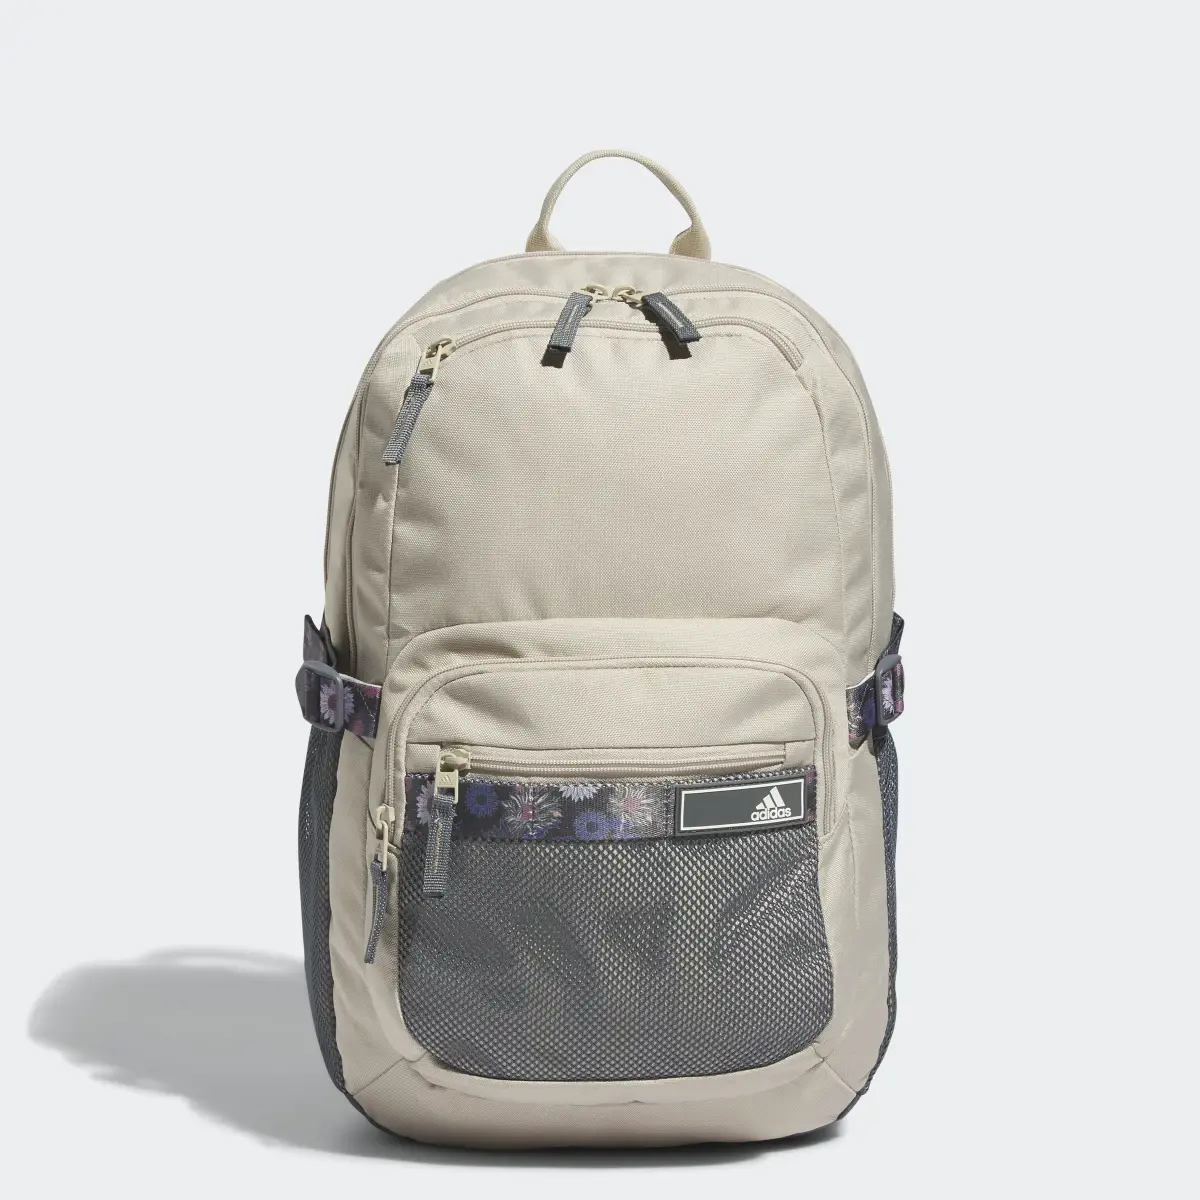 Adidas Energy Backpack. 1